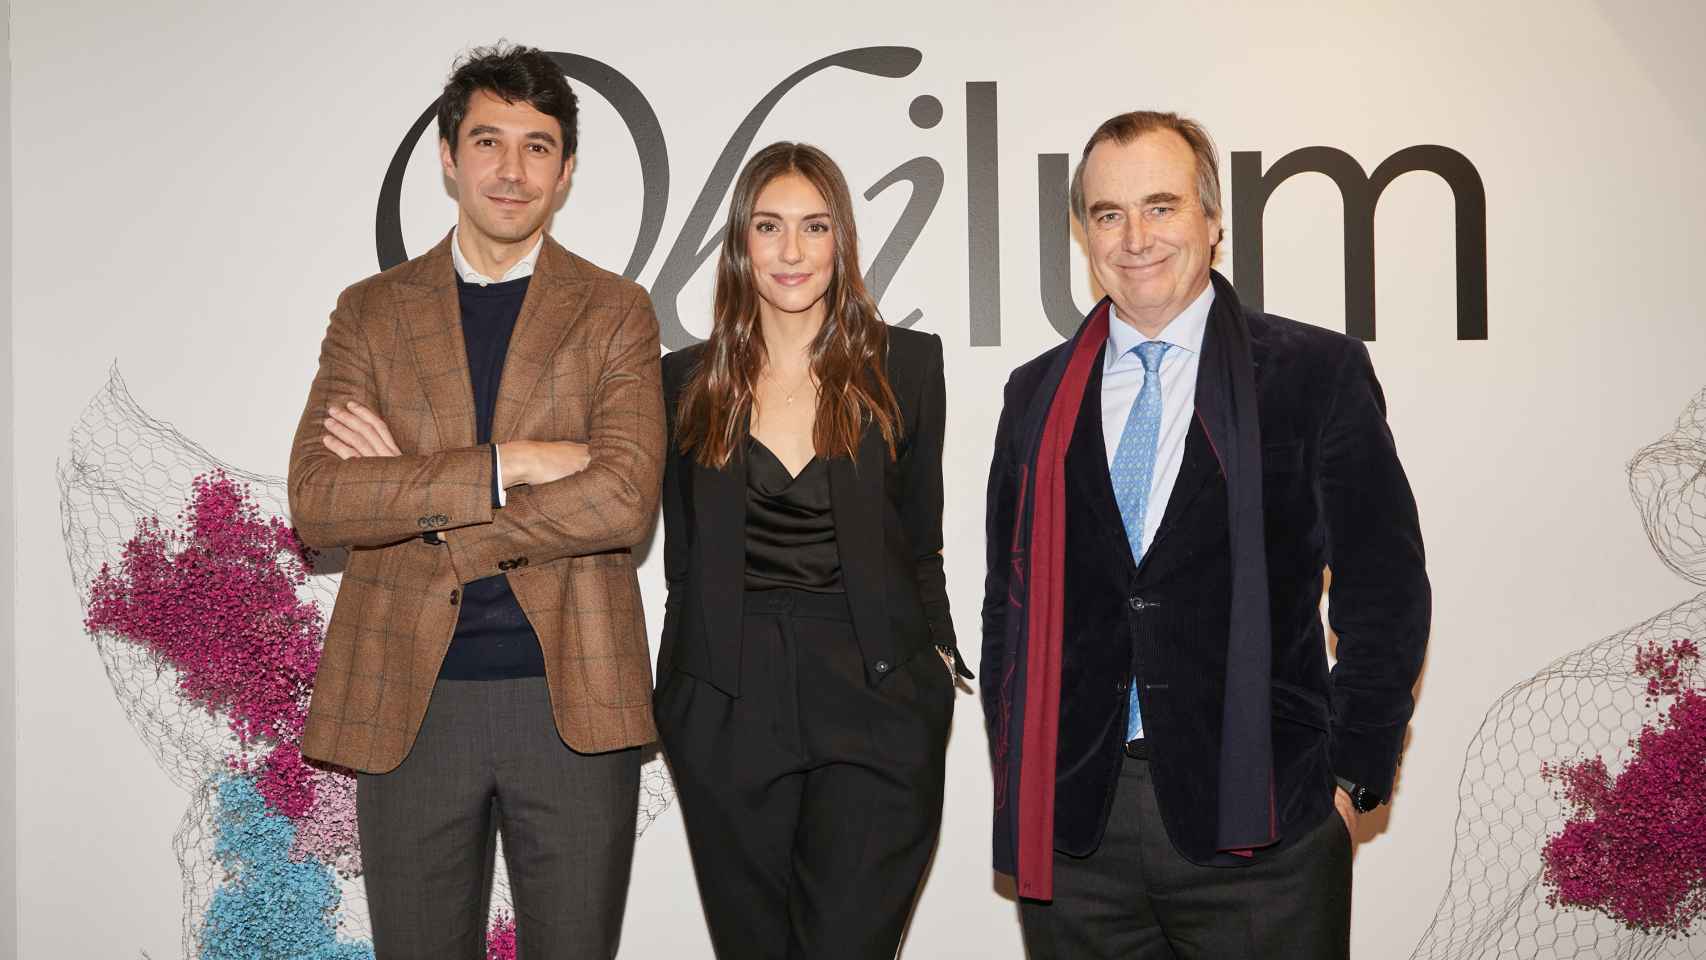 En la imagen (de izquierda a derecha): Carlos Matilla, CEO de Obilum Art; Carmen Ballesta, Founder and CBO de Obilum Art y Miguel Ruiz Gallardón, Founder and Advisor de ioBuilders.